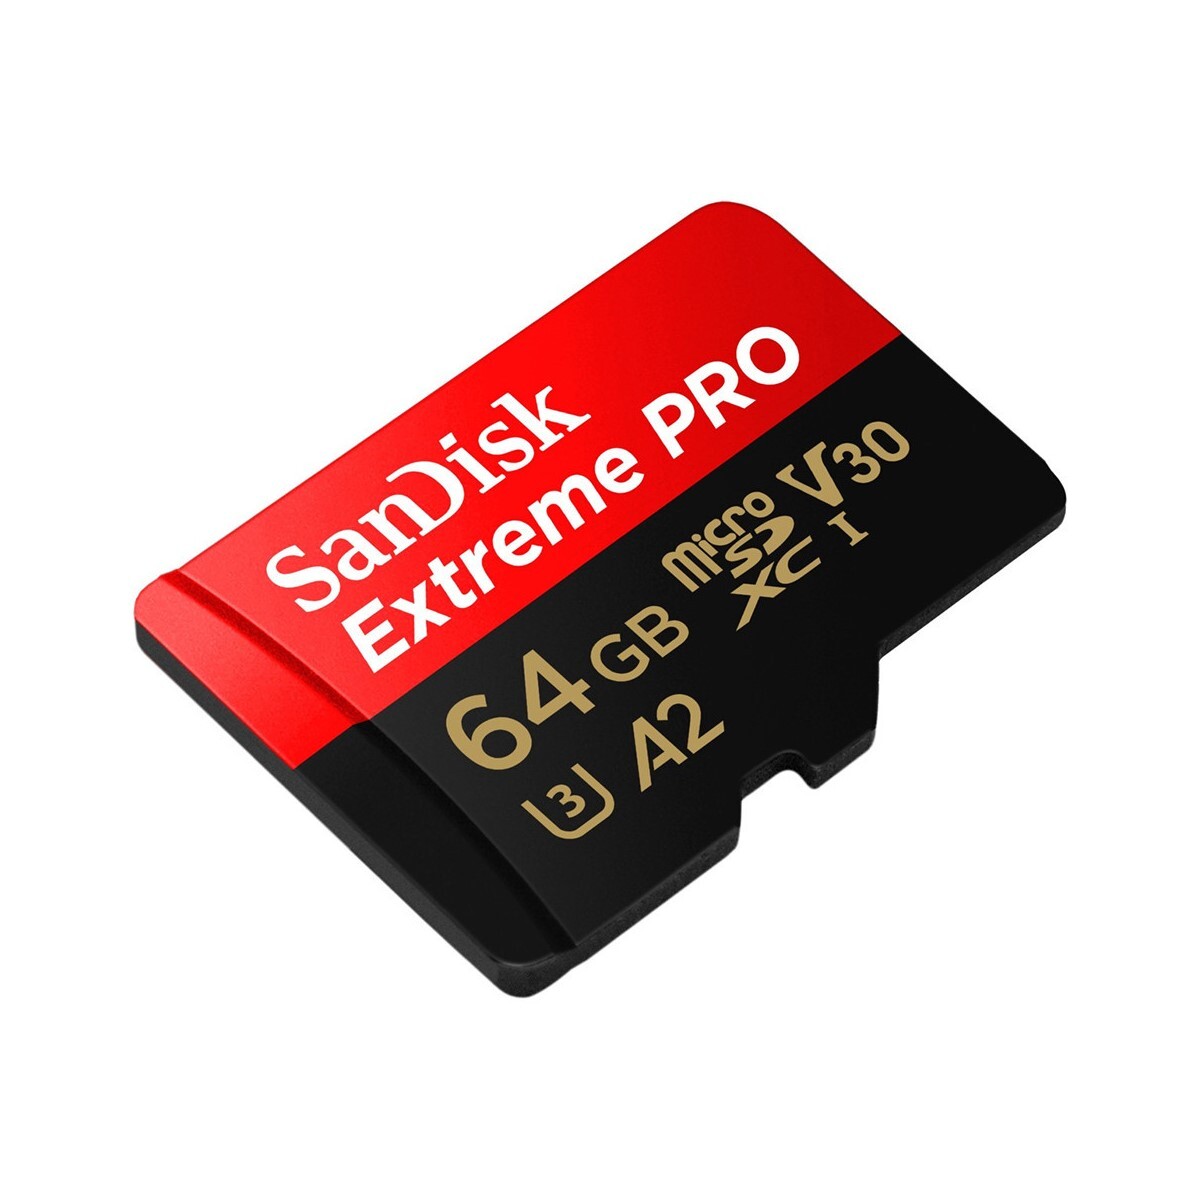 Tarjeta micro sd sandisk 64gb extreme pro 170mb/s 4k + adaptador sd Tarjeta micro sd sandisk 64gb extreme pro 170mb/s 4k + adaptador sd